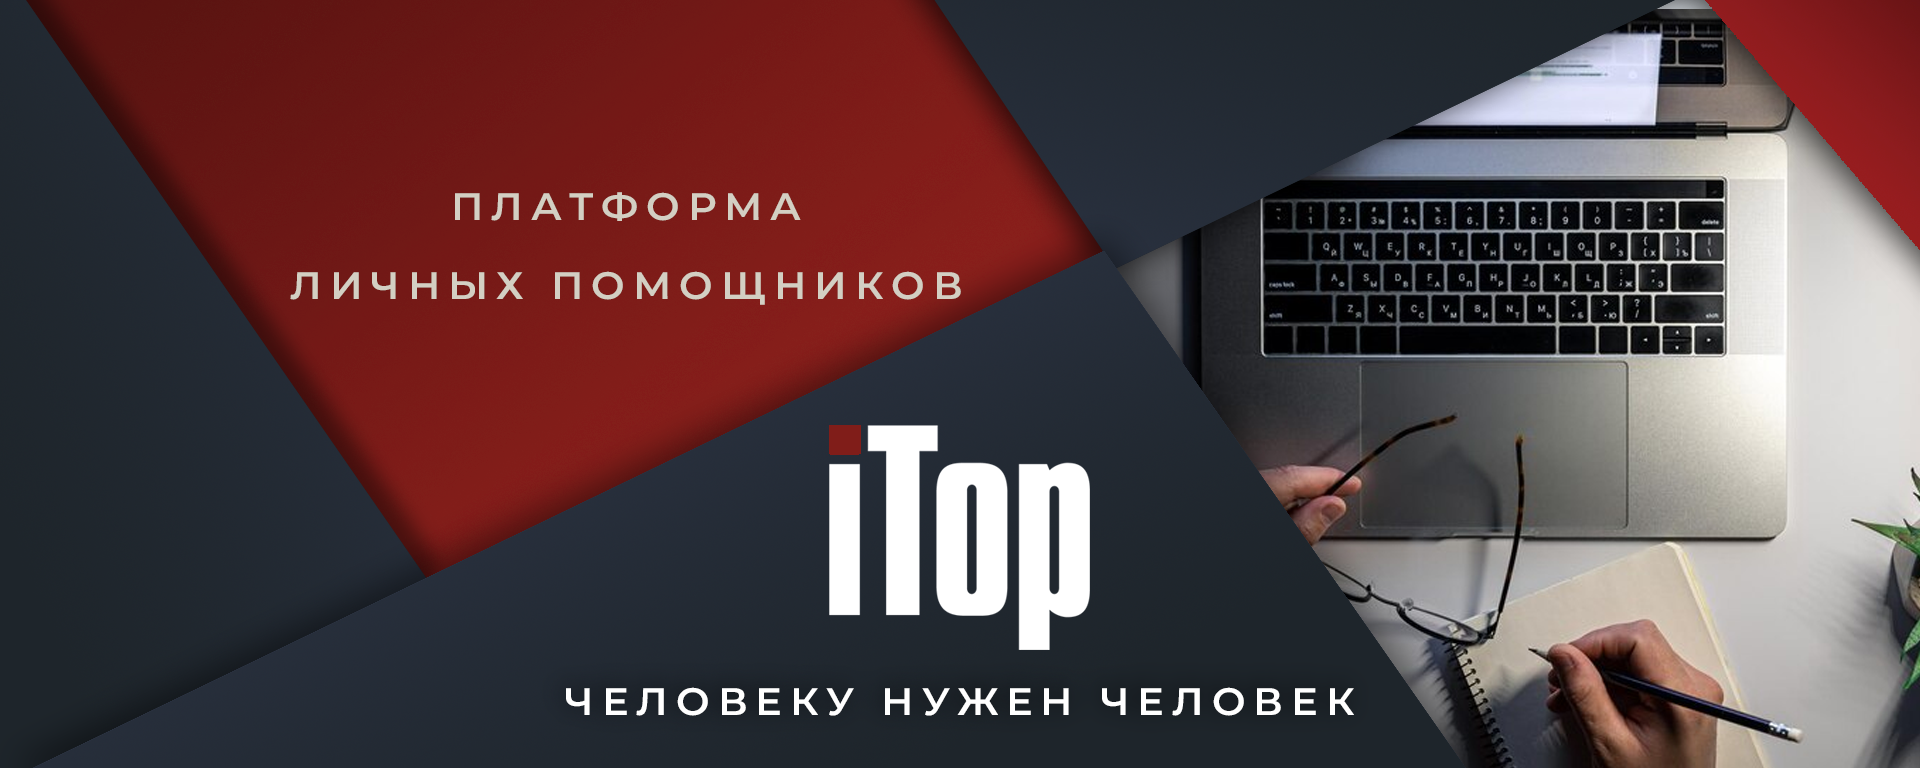 itop.pro - Сервис для быстрого выполнения рутинных бизнес-задач на базе мини-приложения в экосистеме ВКонтакте